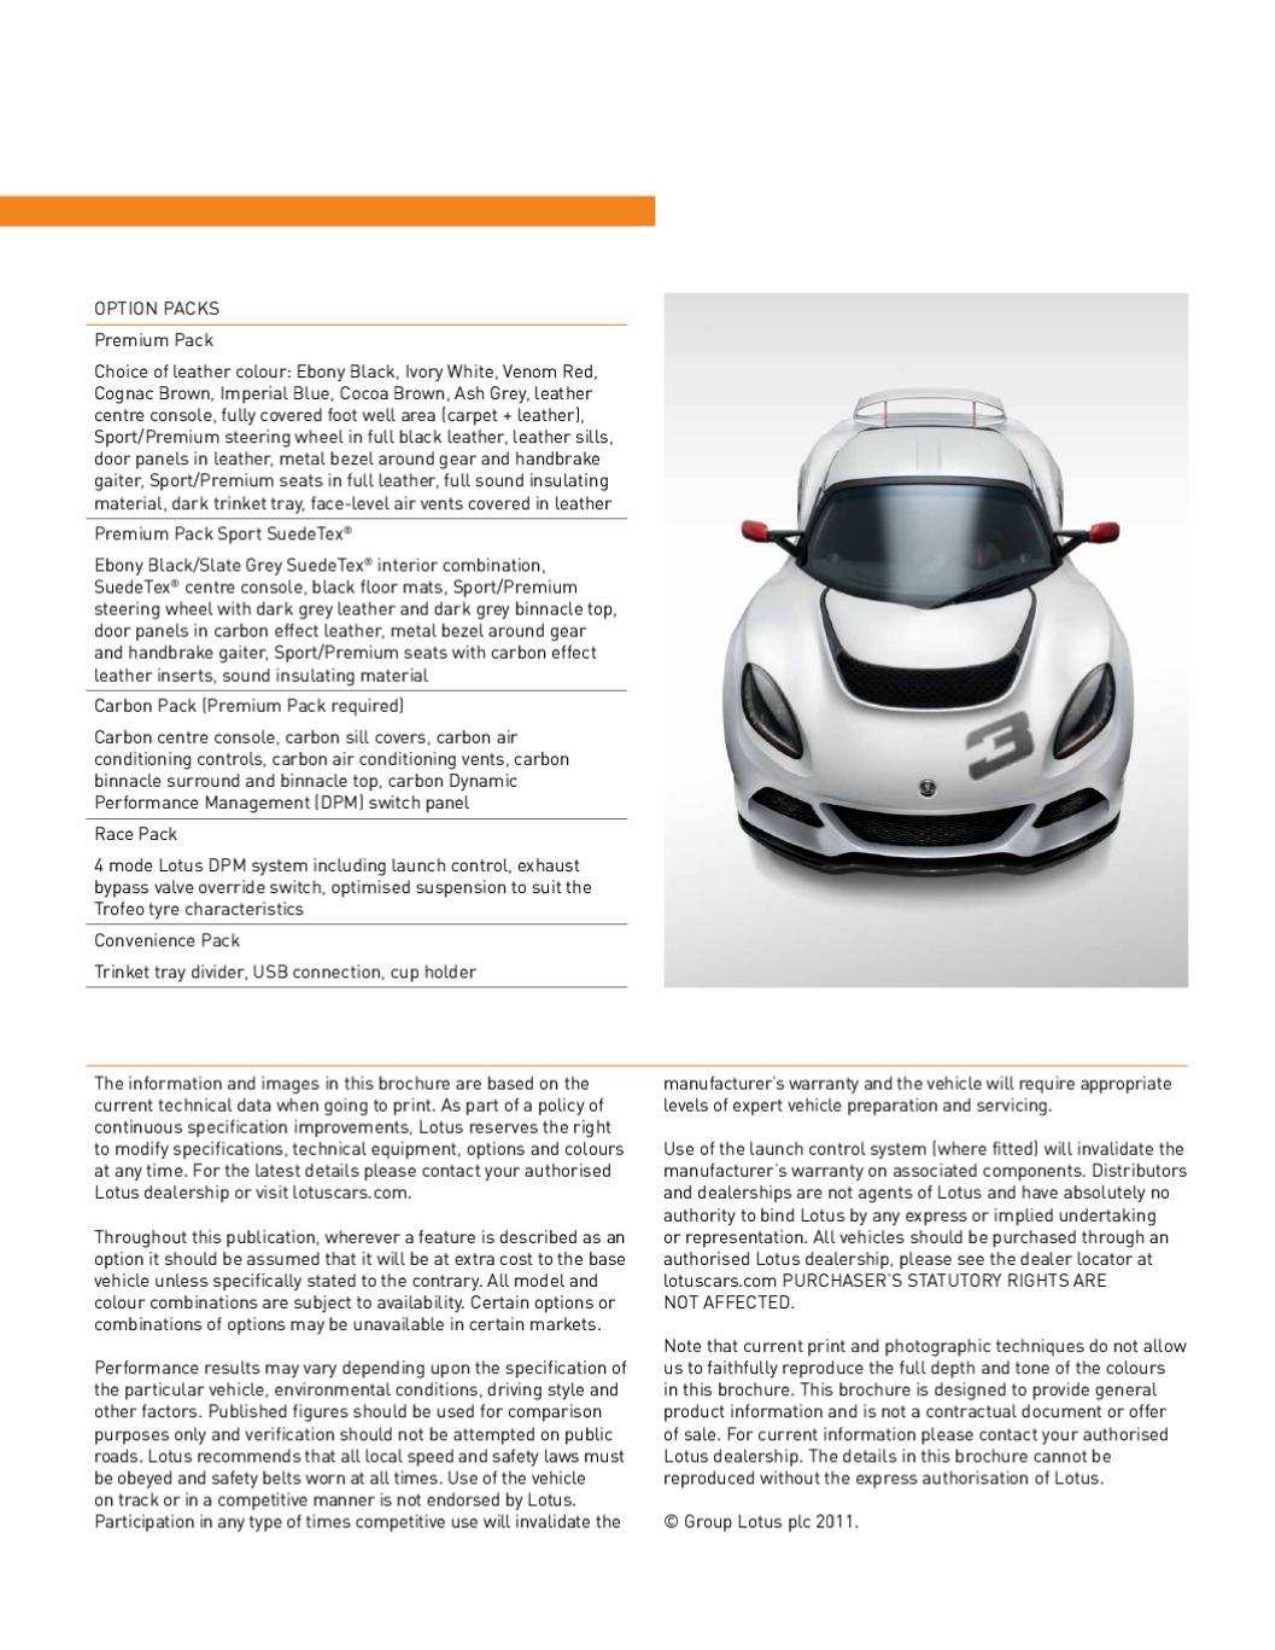 2011 Lotus Exige Brochure Page 5